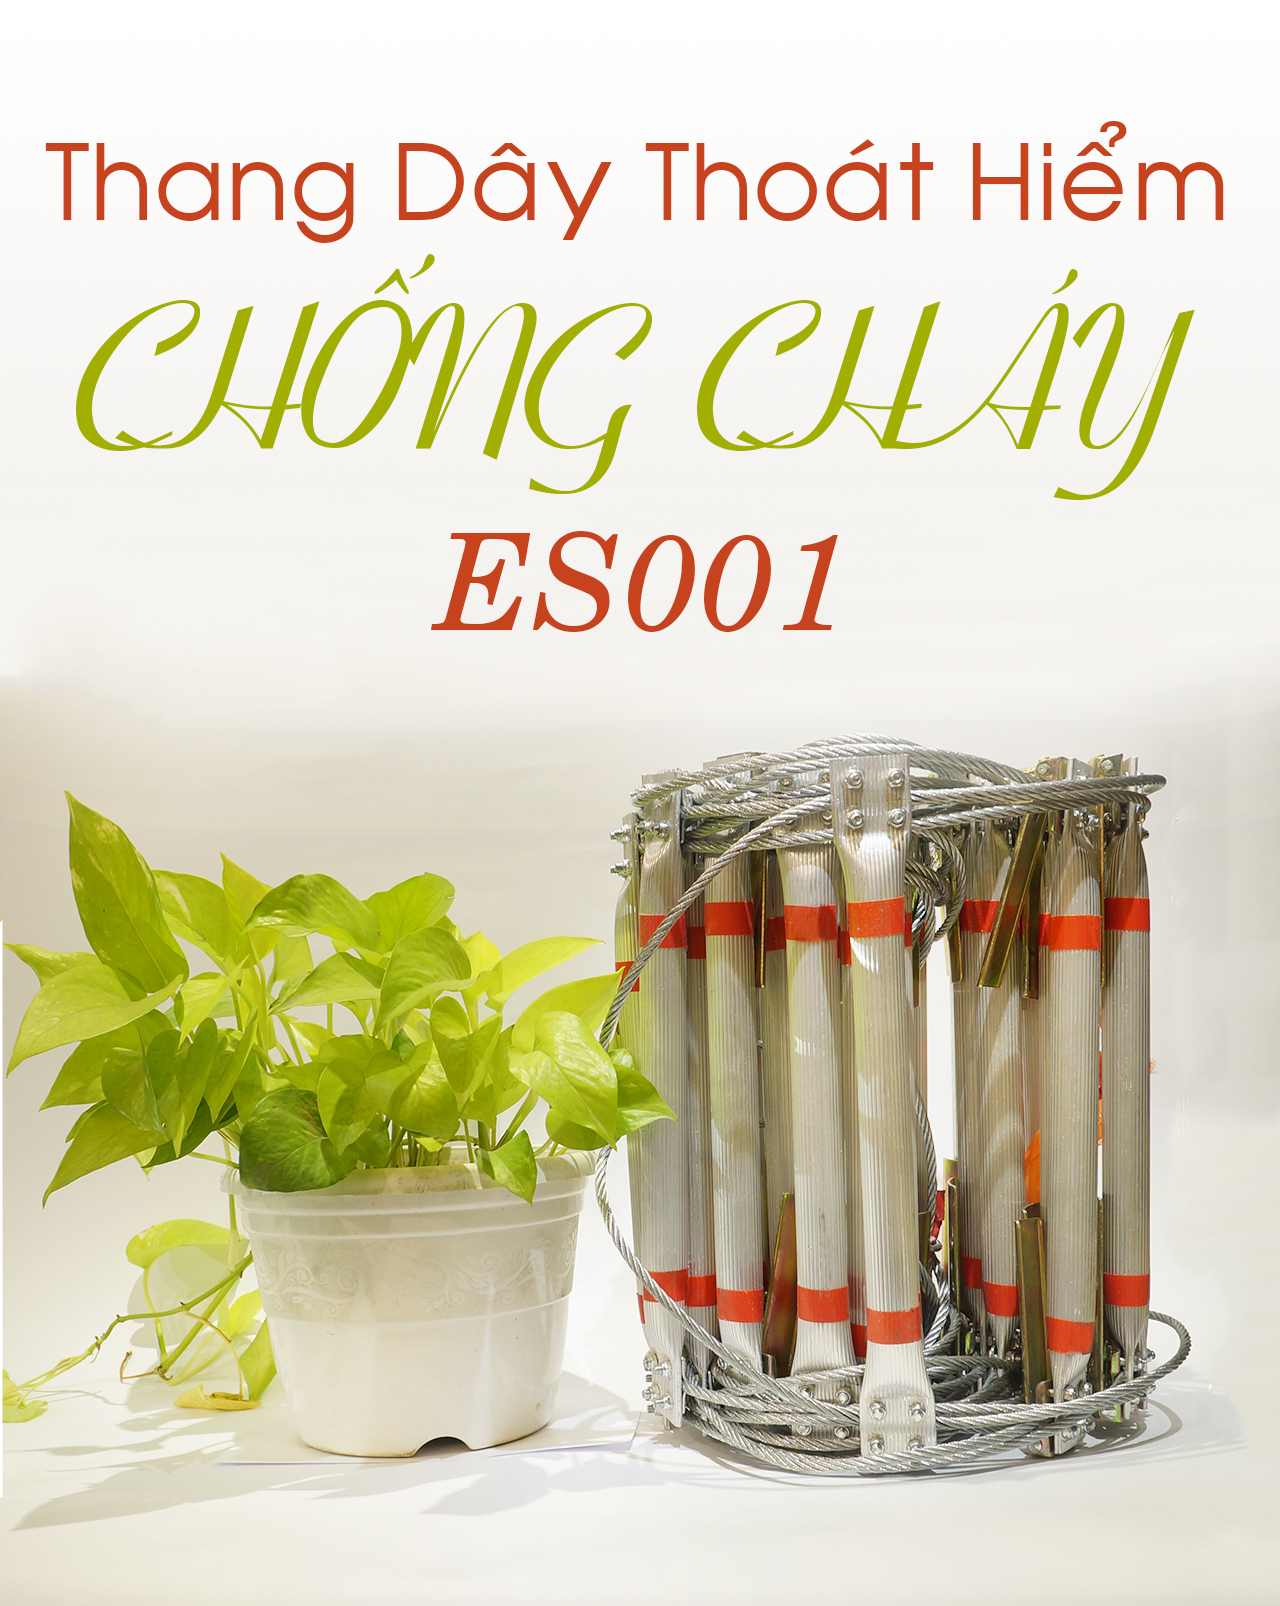 thang day thoat hiem chong chay ES001